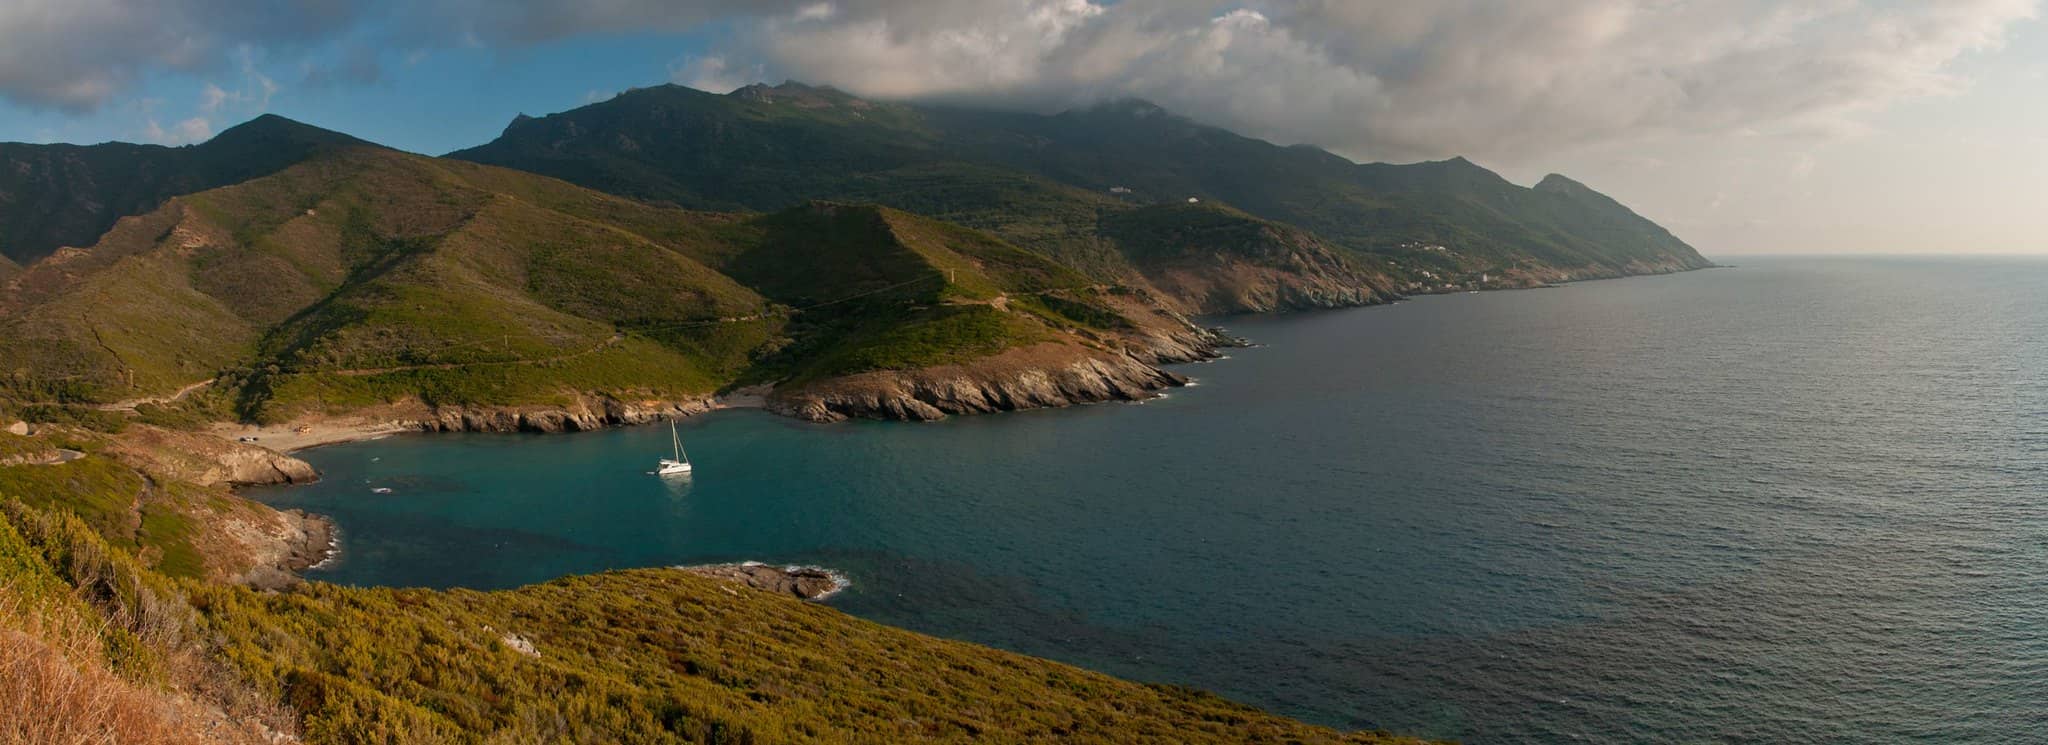 Paysage du Cap Corse. Bateau naviguant dans la mer bleu turquoise entouré de montagnes et de végétation.